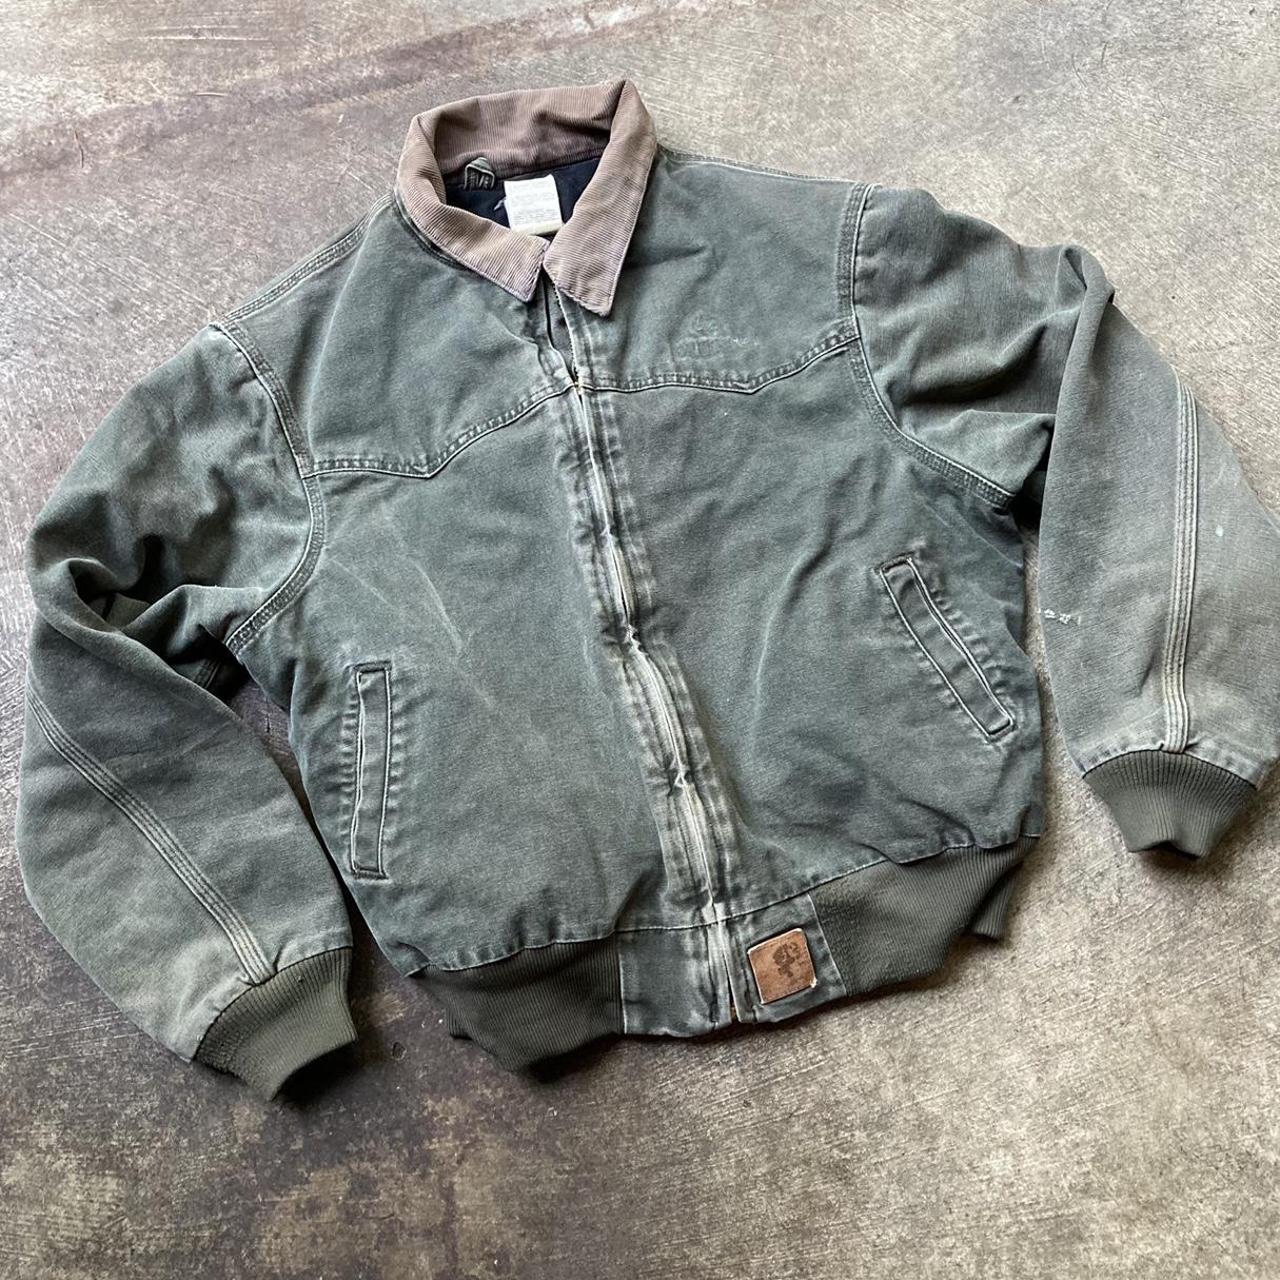 Vintage VTG y2k carhartt work jacket zip up size... - Depop